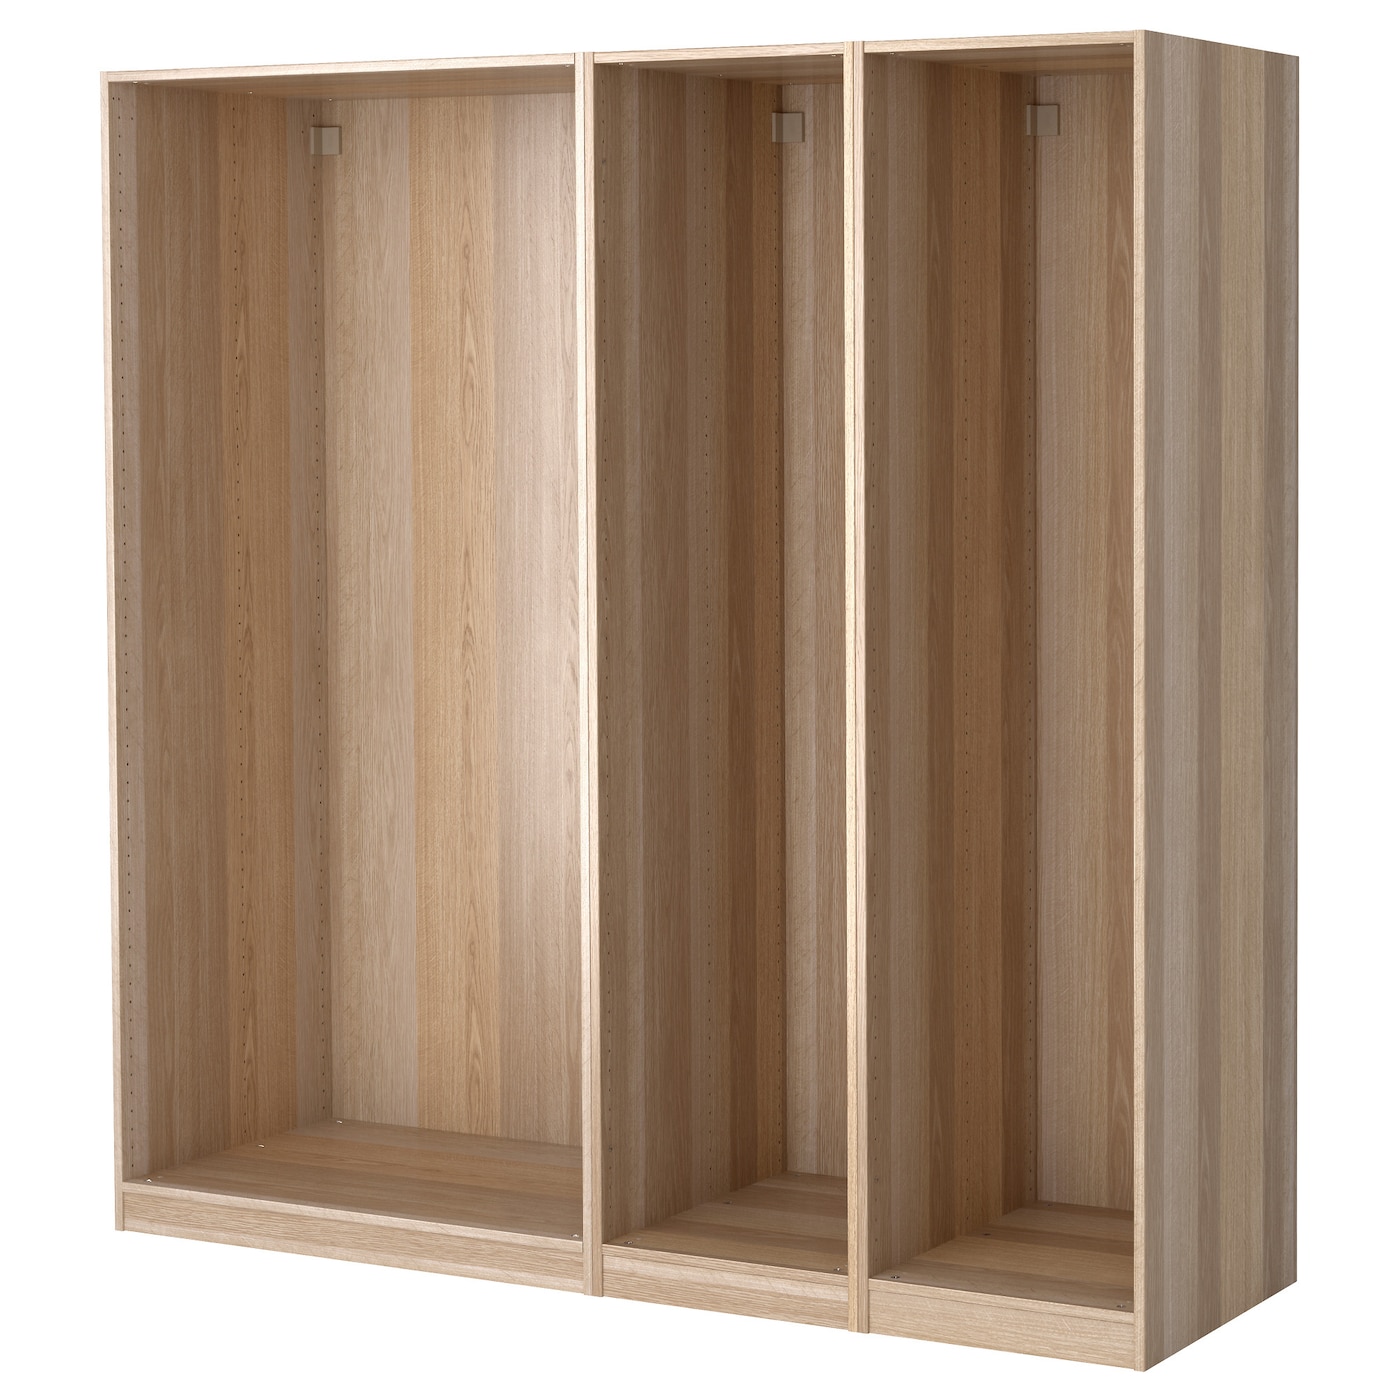 4 каркаса гардероба - PAX IKEA/ ПАКС ИКЕА, 200x58x201  см, коричневый